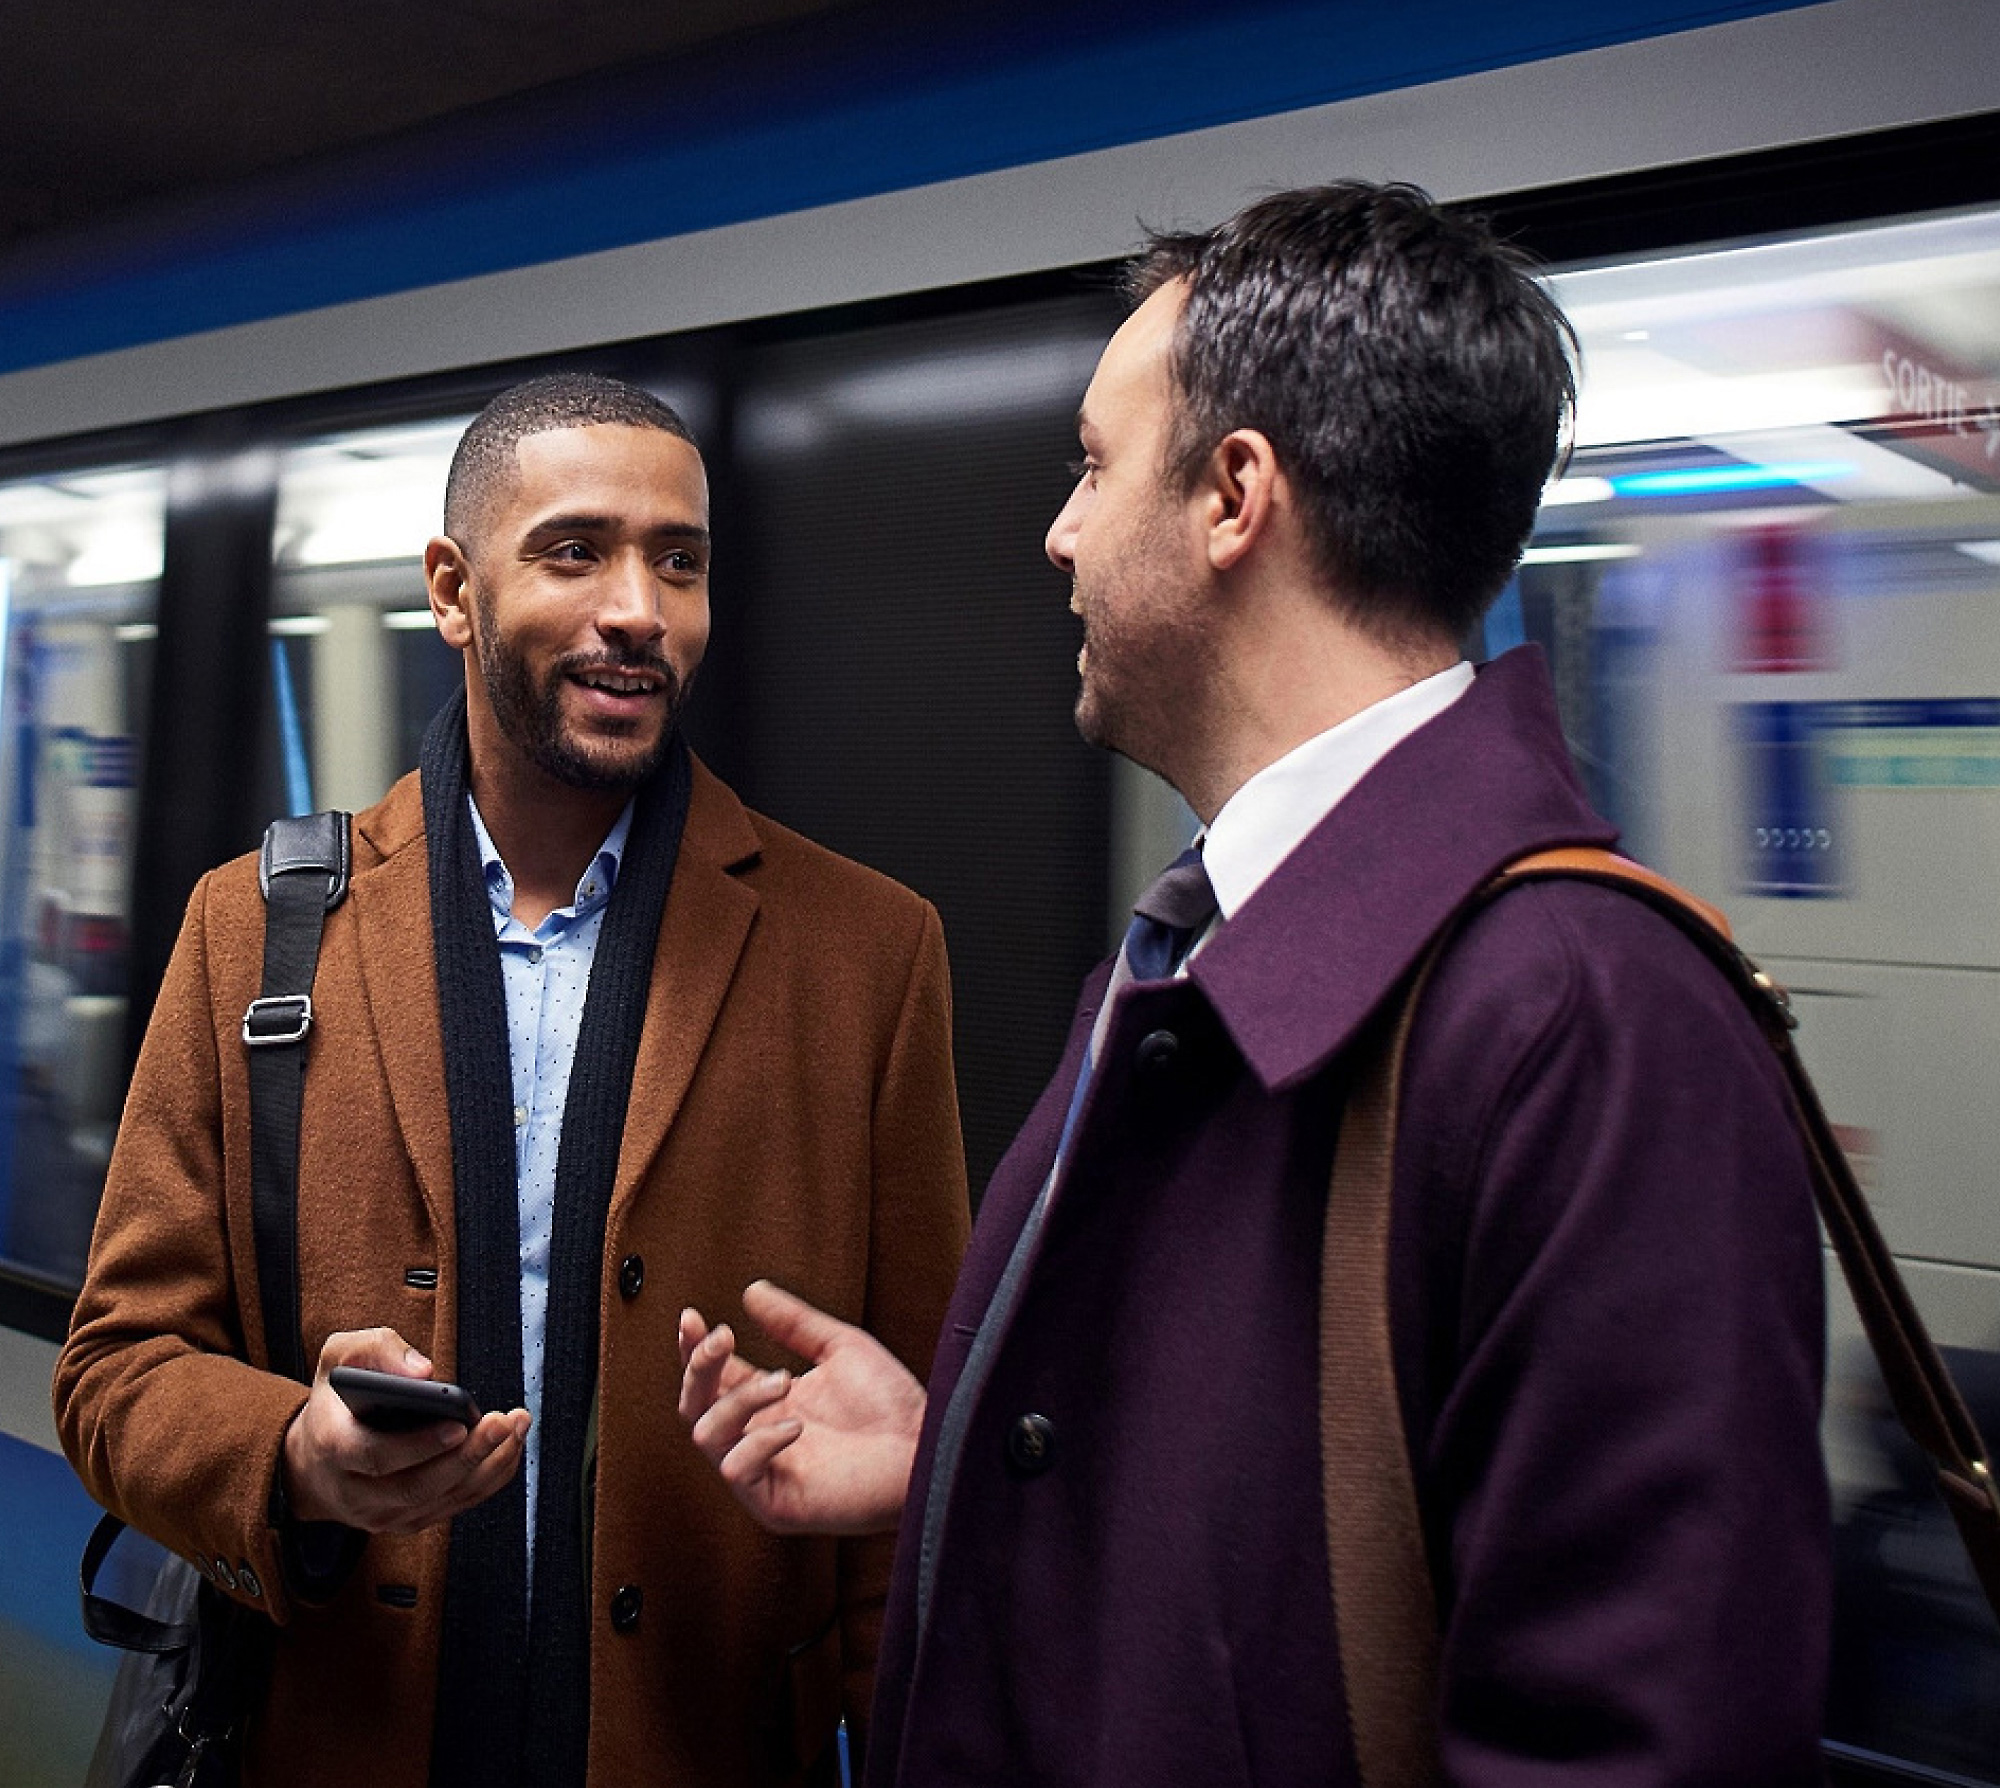 Kaksi miestä keskustelemassa metroasemalla, toinen pitelee älypuhelinta ja taustalla on sumennettu juna liikkeessä.